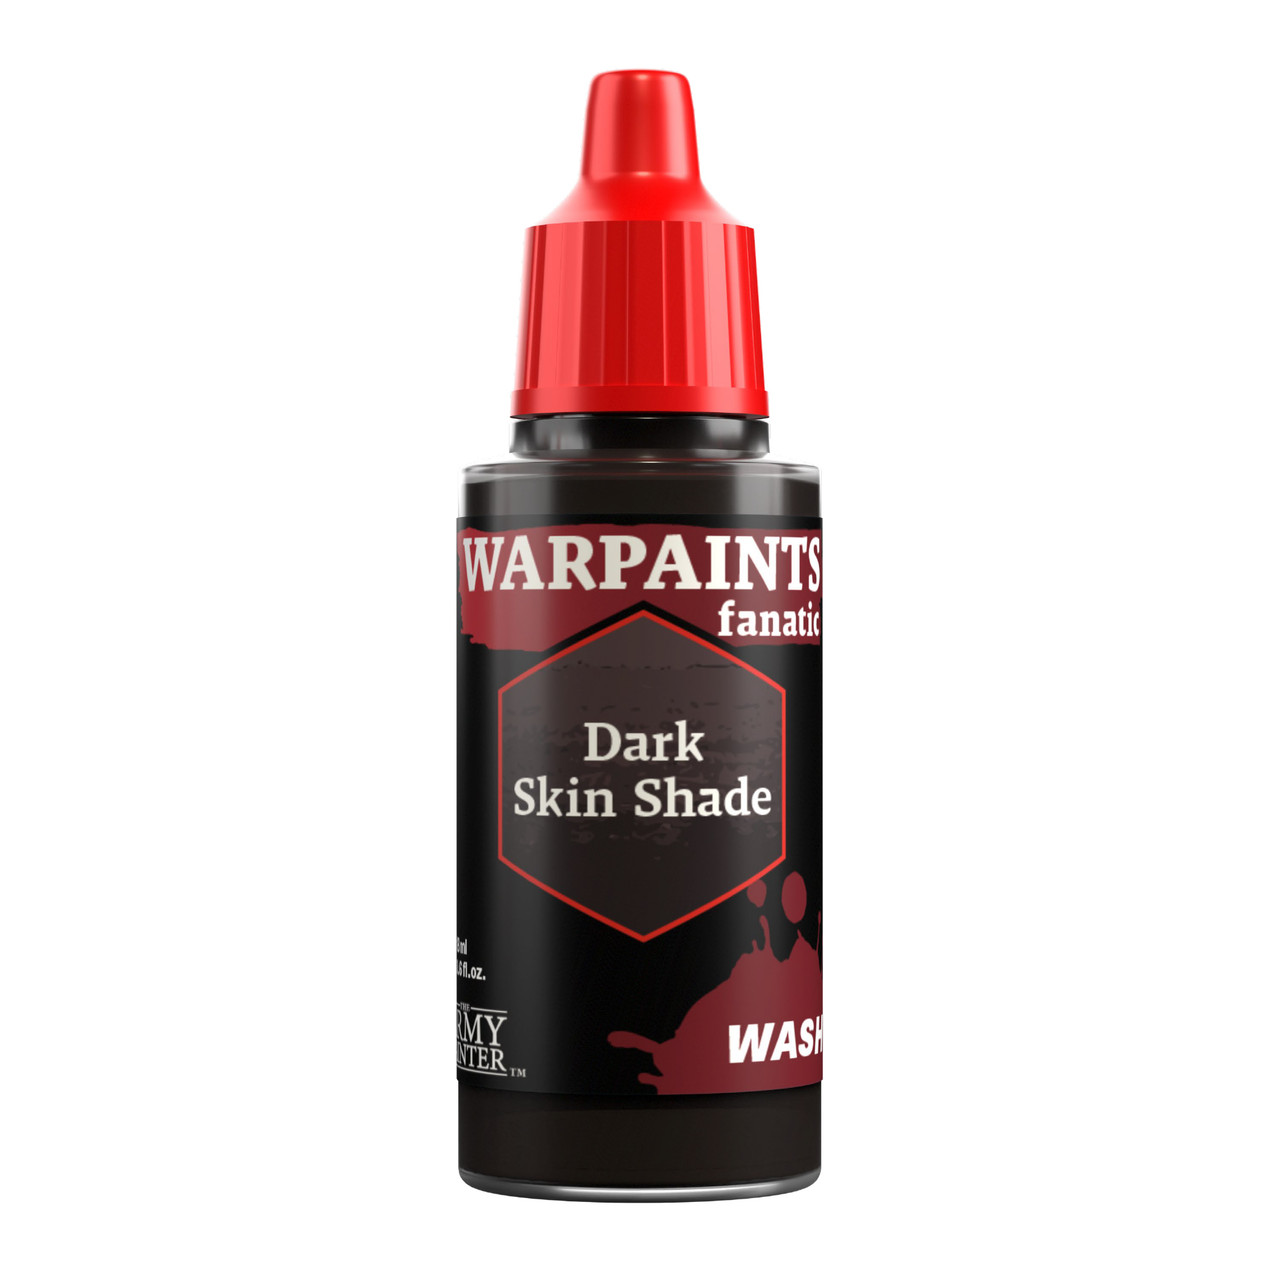 WP3215 - Warpaints Fanatic Wash: Dark Skin Shade